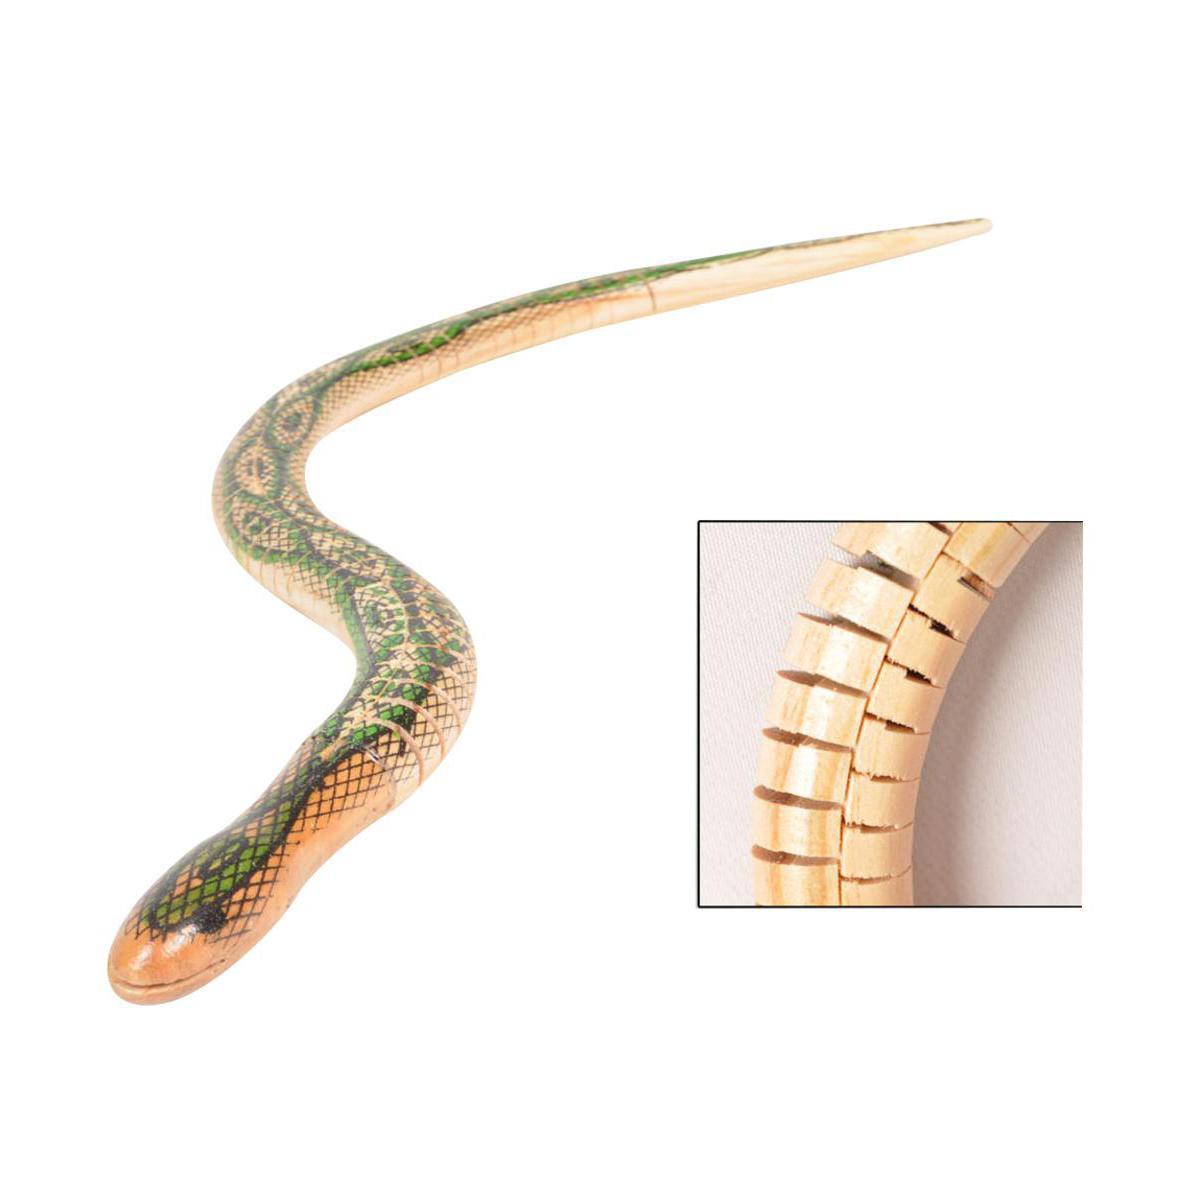 Serpent articulé en bois - 49 cm - Marron